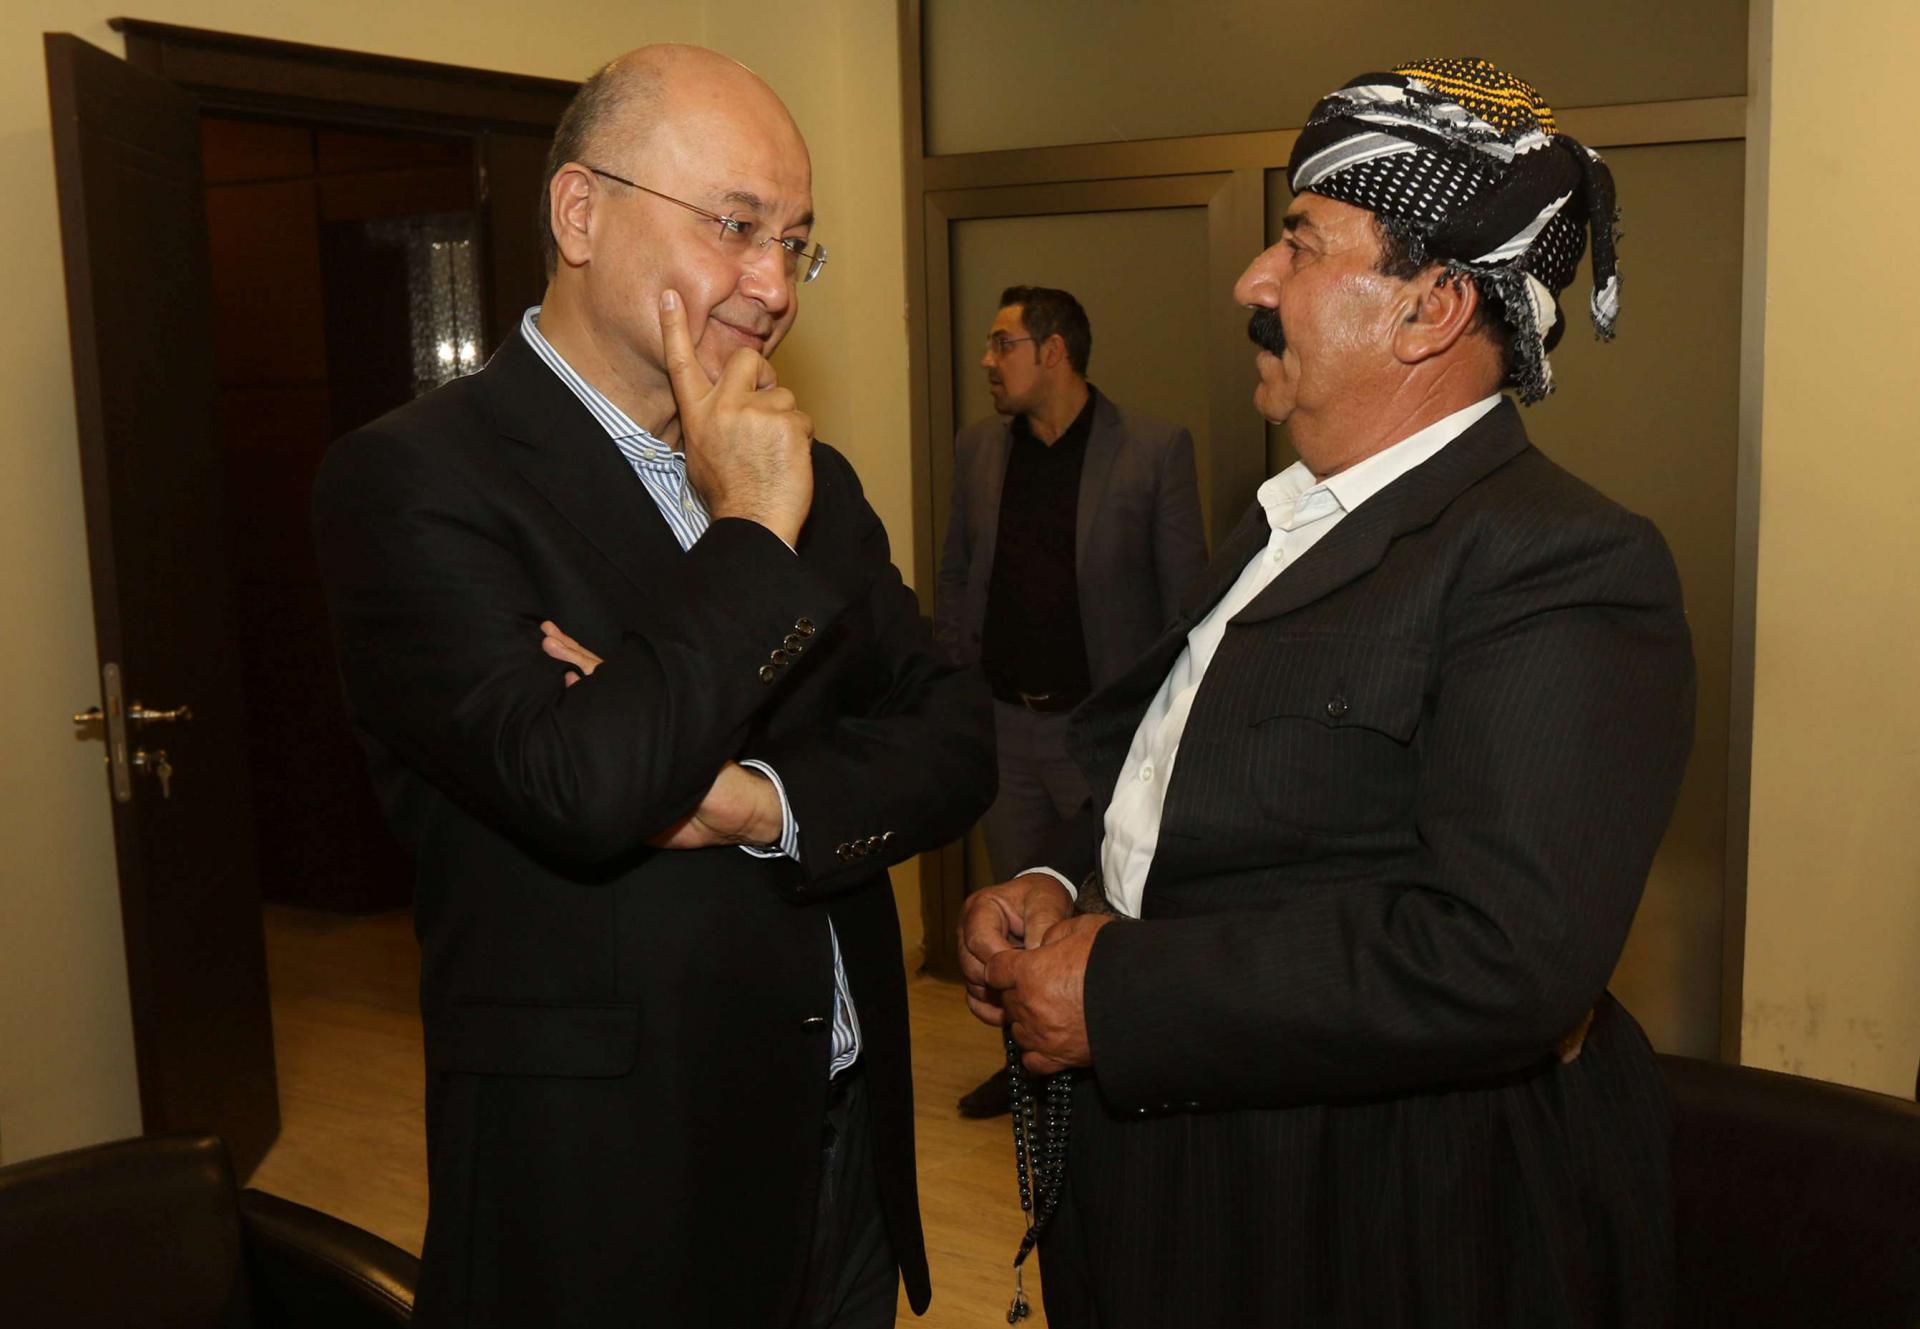 رئيس وزراء حكومة كردستان السابق برهم صالح في حوار مع أحد الزعماء الأكراد في السليمانية